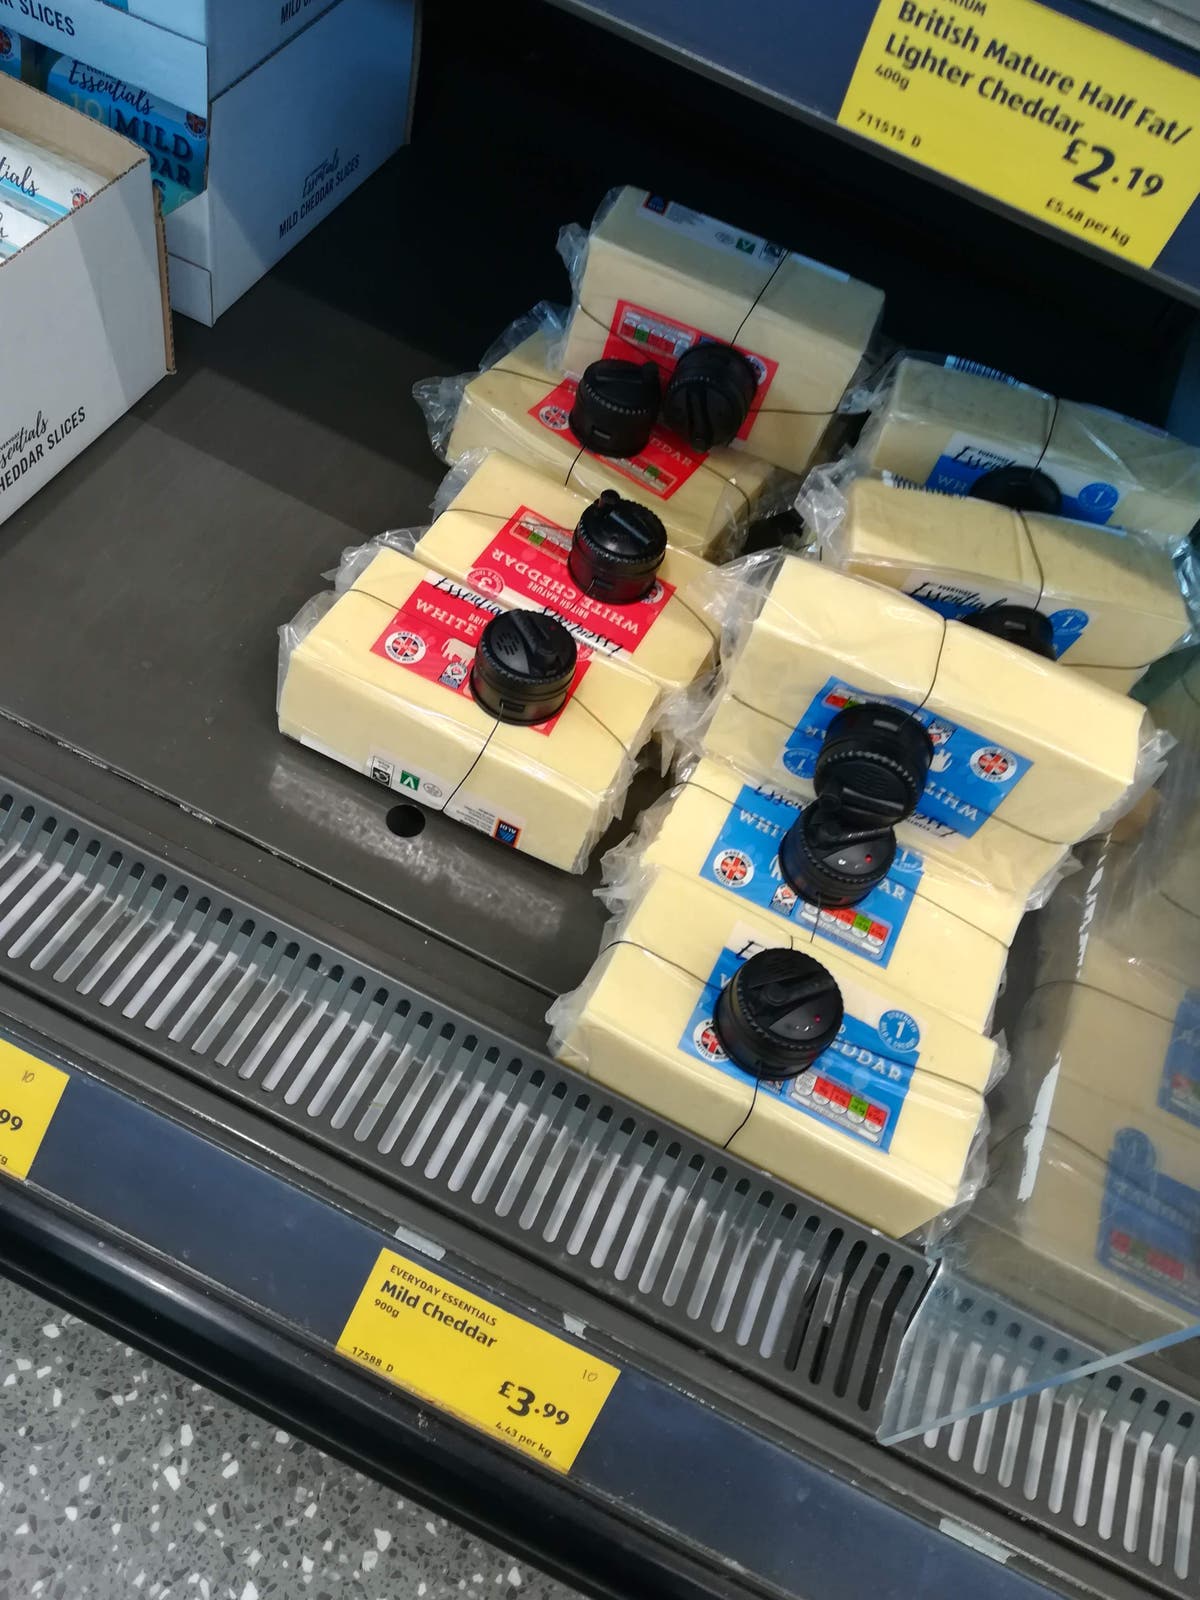 食料費が高騰し続ける中、スーパーマーケットはチーズブロックにセキュリティタグを付けています